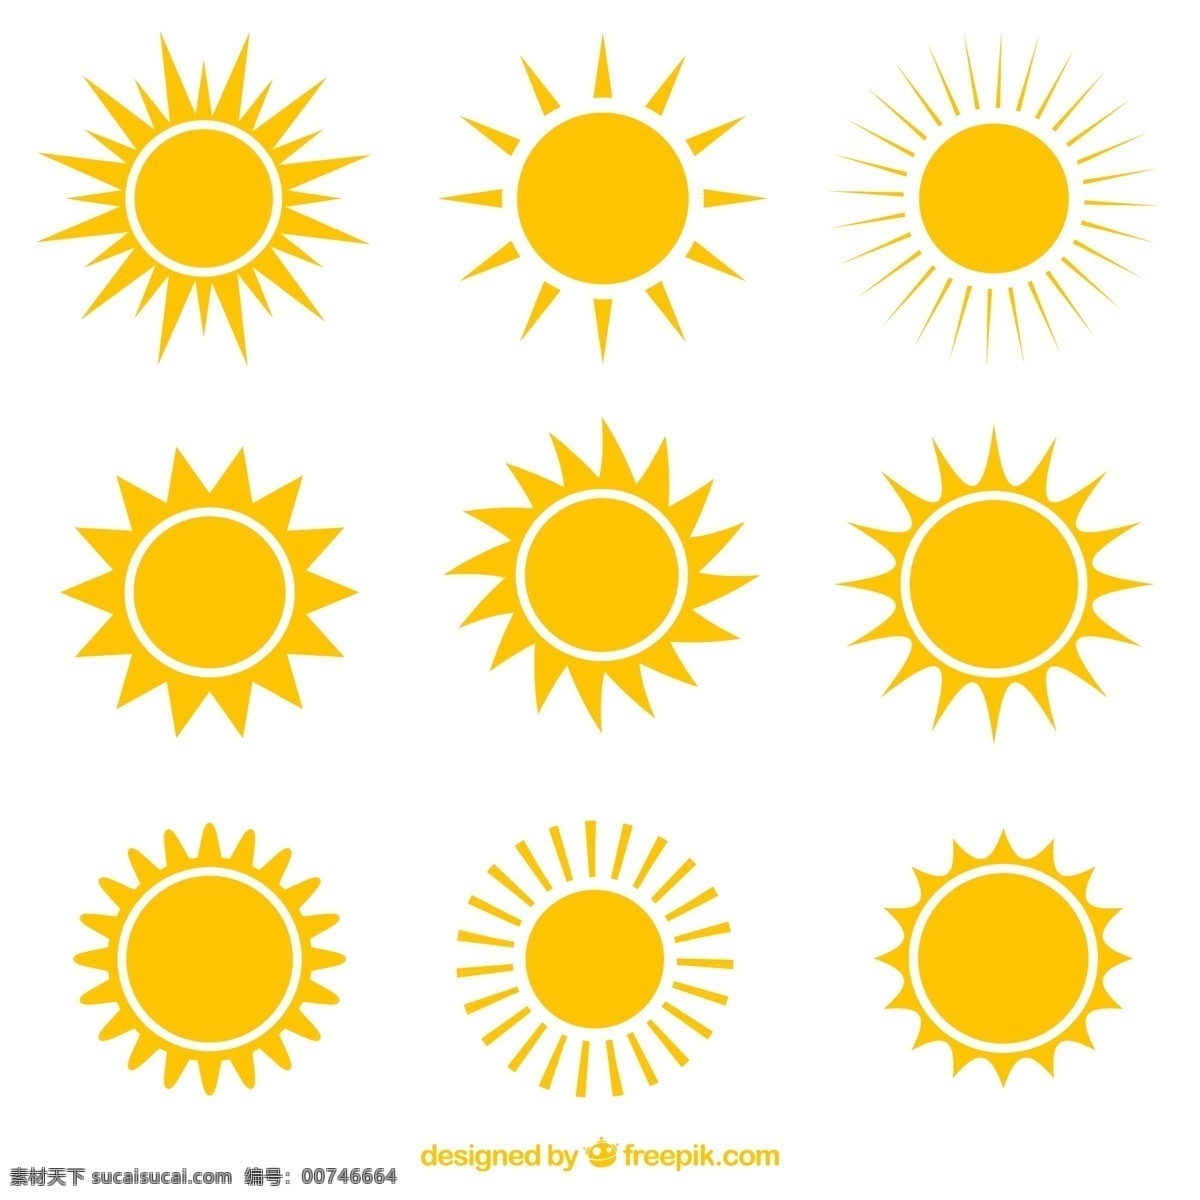 款 创意 太阳 图标 矢量图 9款 多种形状 金黄色 白色